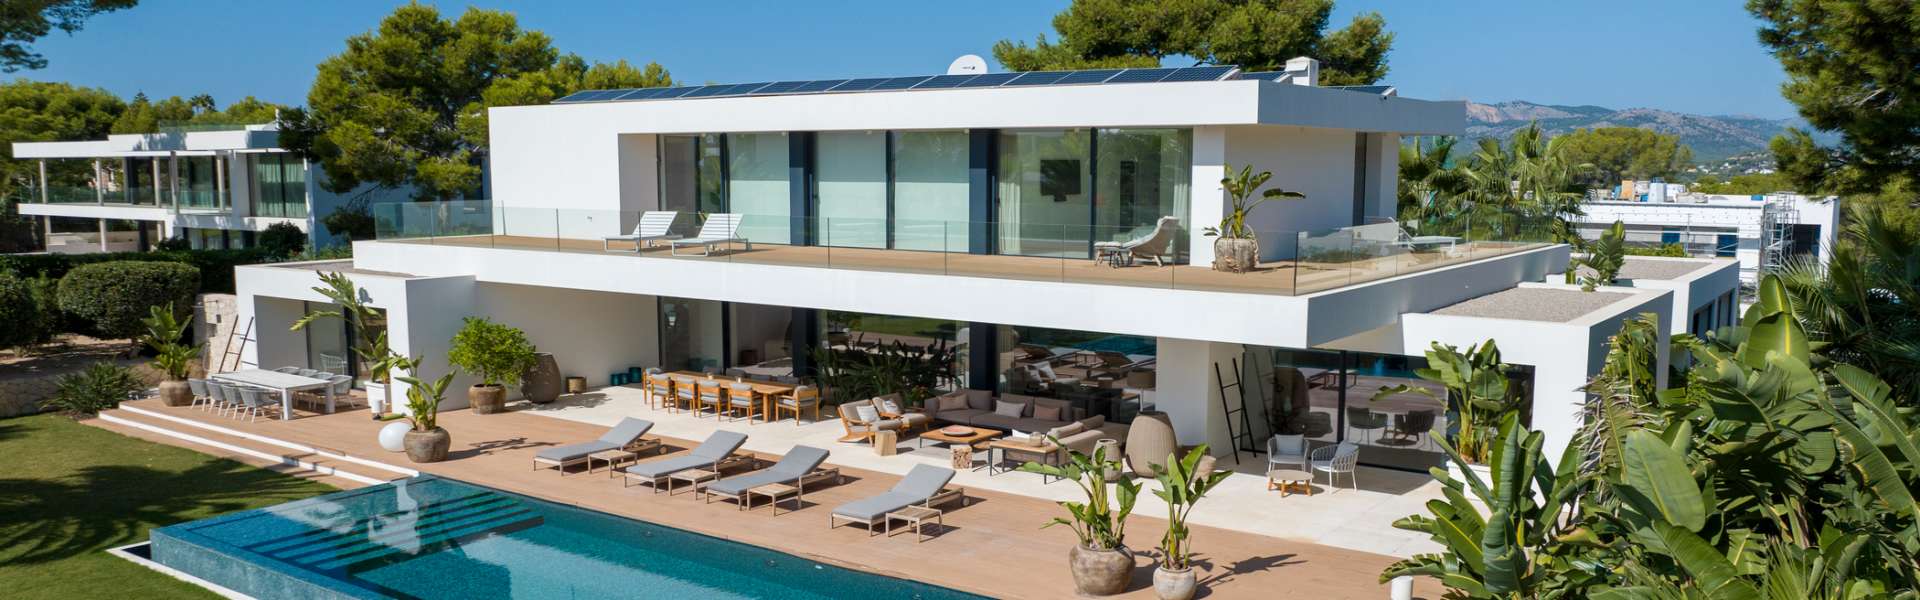 Luxus Villa in Santa Ponsa mit angrenzendem Baugrundstück